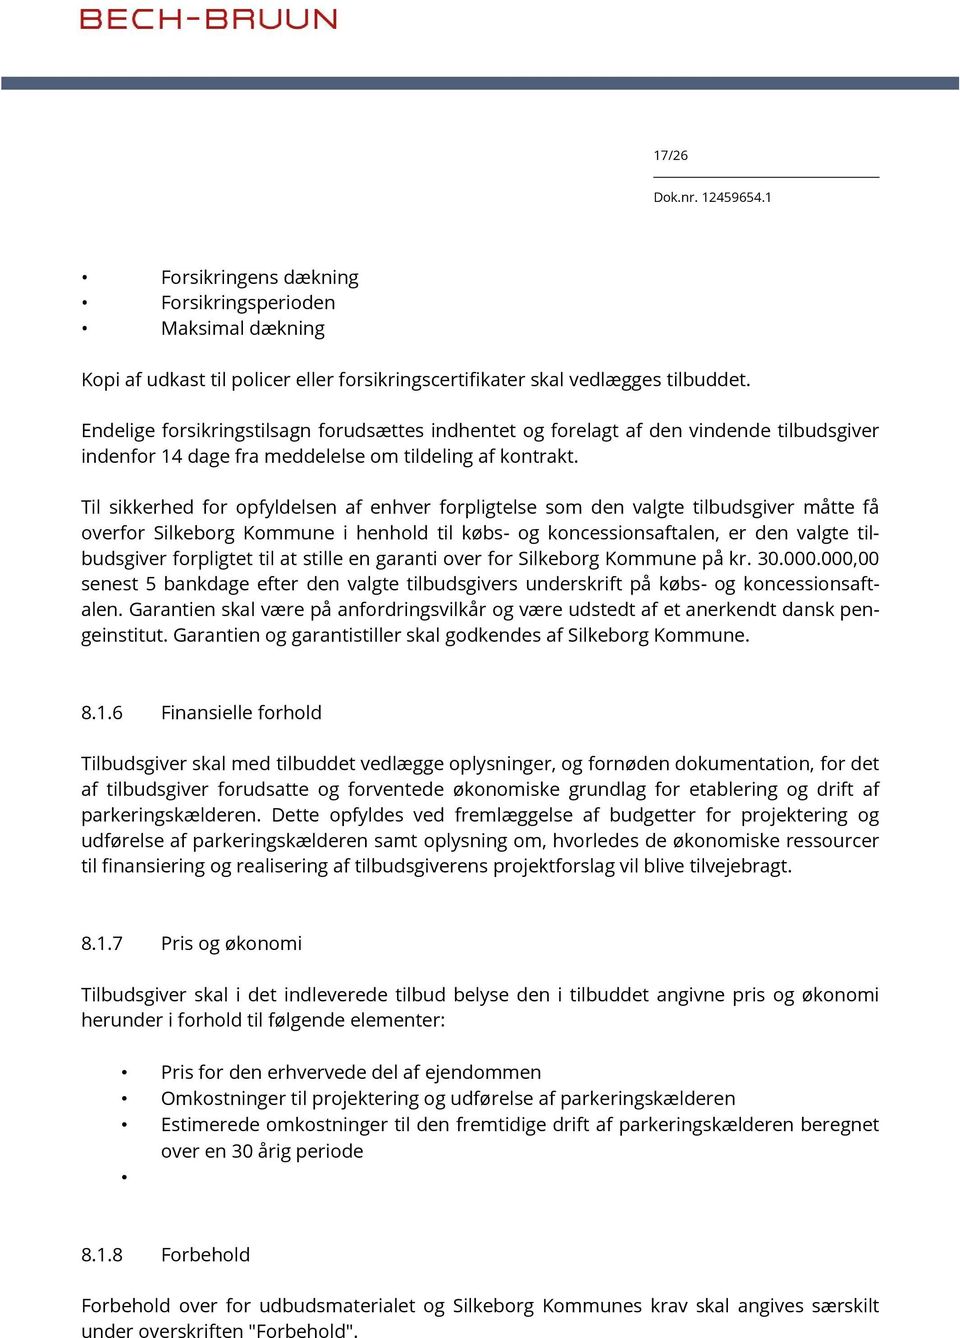 Til sikkerhed for opfyldelsen af enhver forpligtelse som den valgte tilbudsgiver måtte få overfor Silkeborg Kommune i henhold til købs- og koncessionsaftalen, er den valgte tilbudsgiver forpligtet